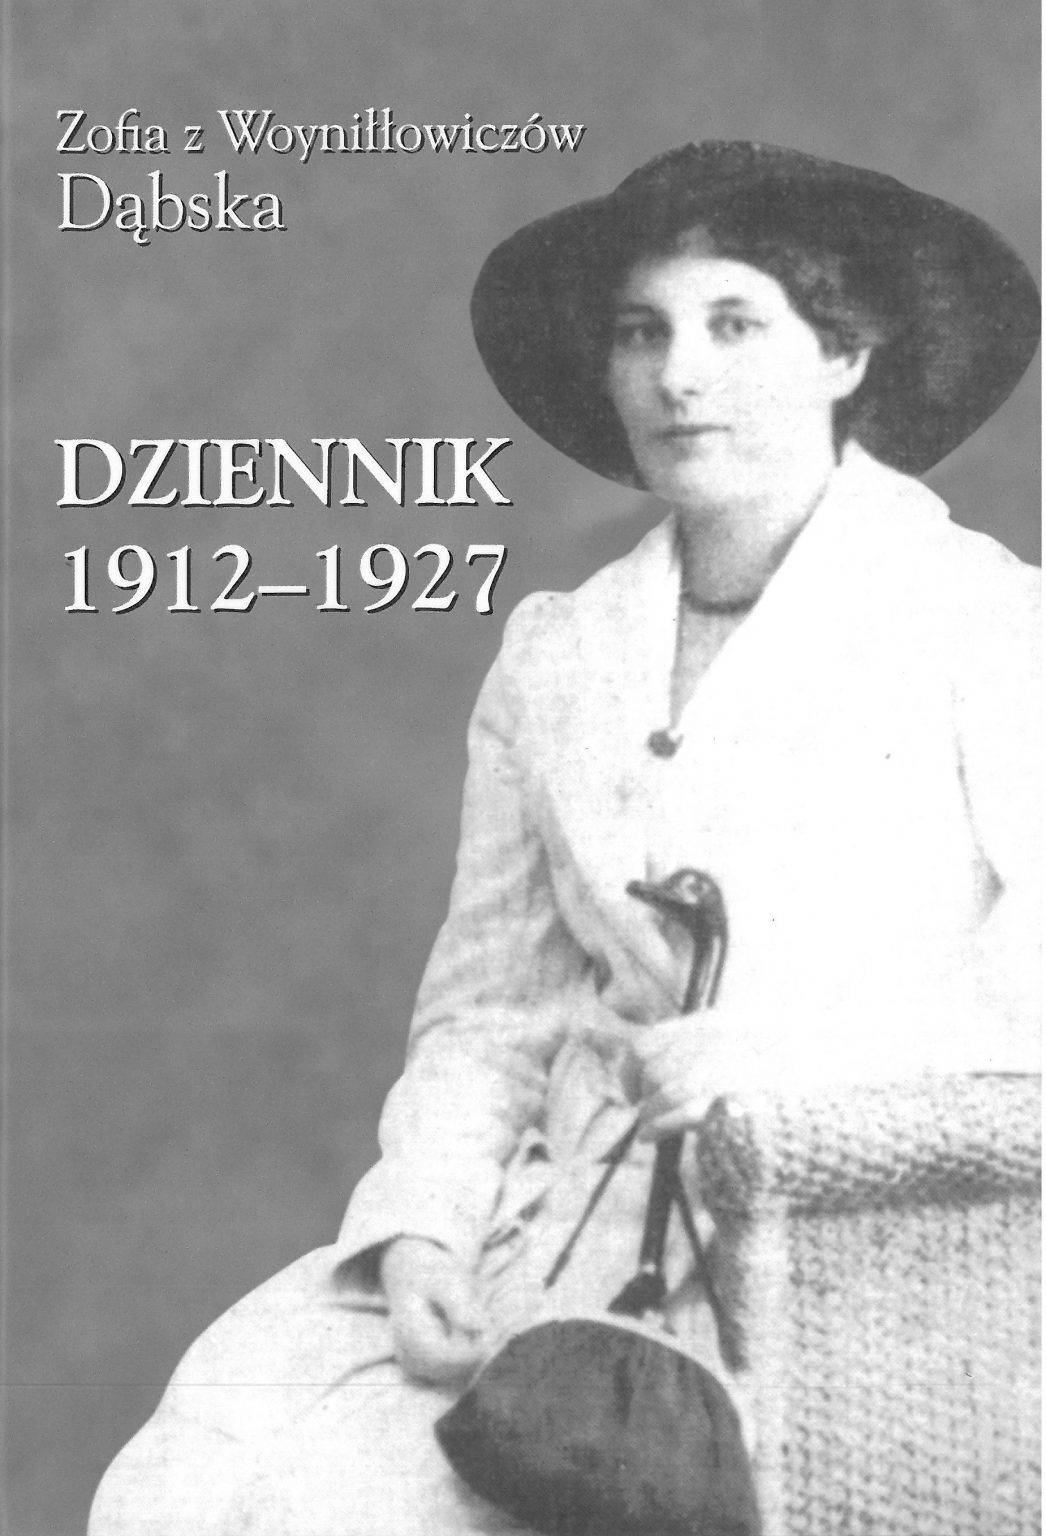 Dziennik 1912-1927 (Z. z Woyniłłowiczów Dąbska)